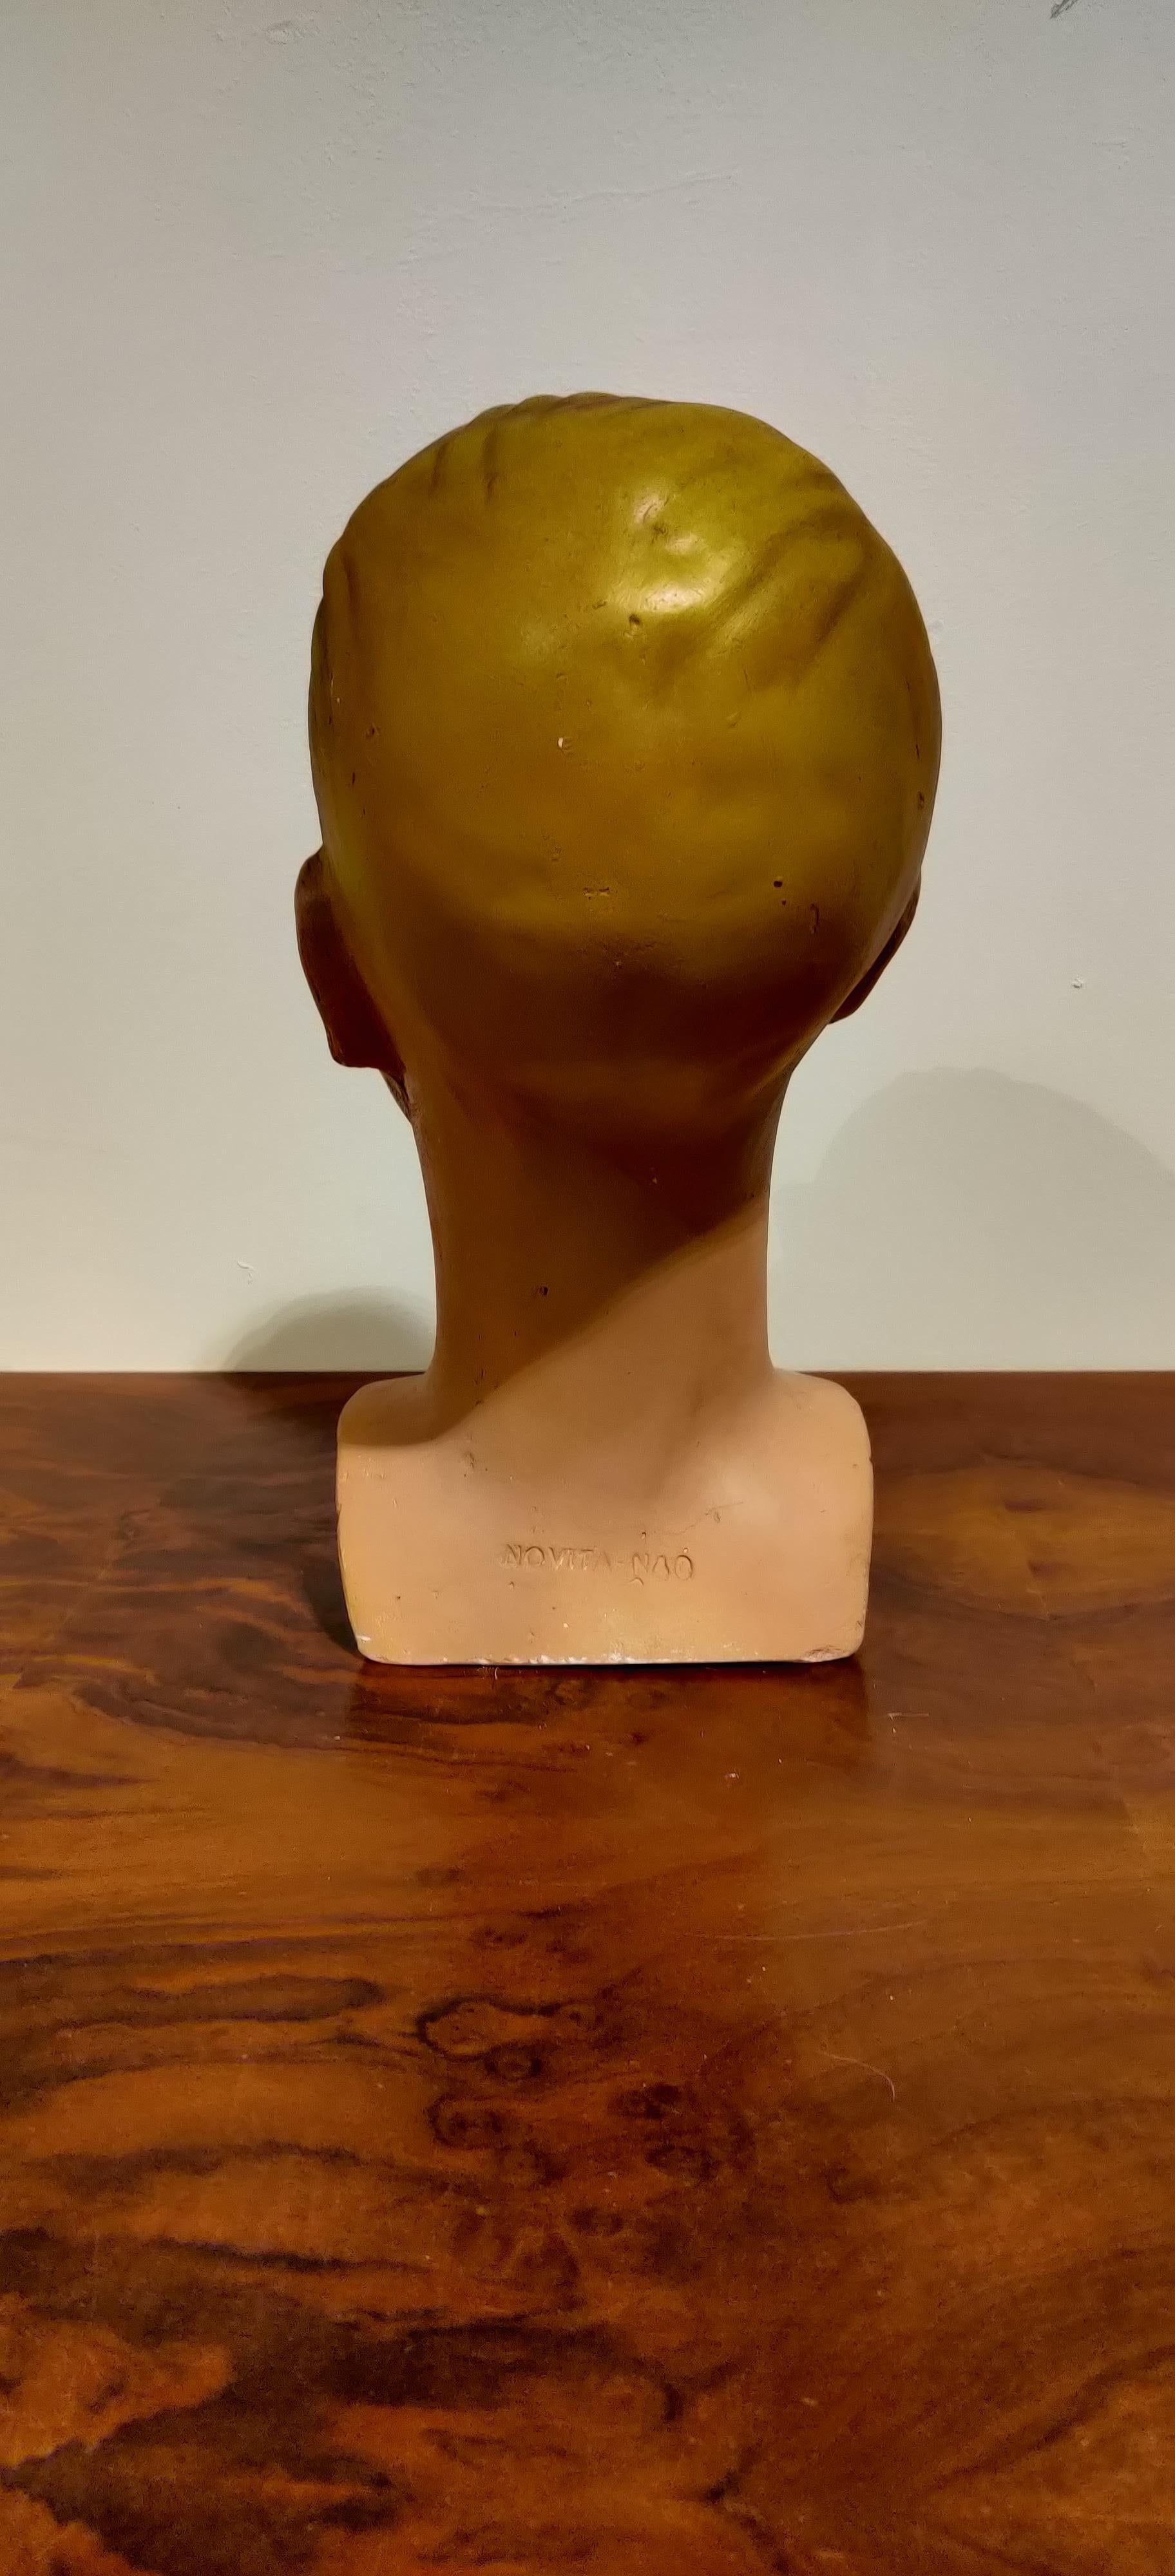 transparent mannequin head